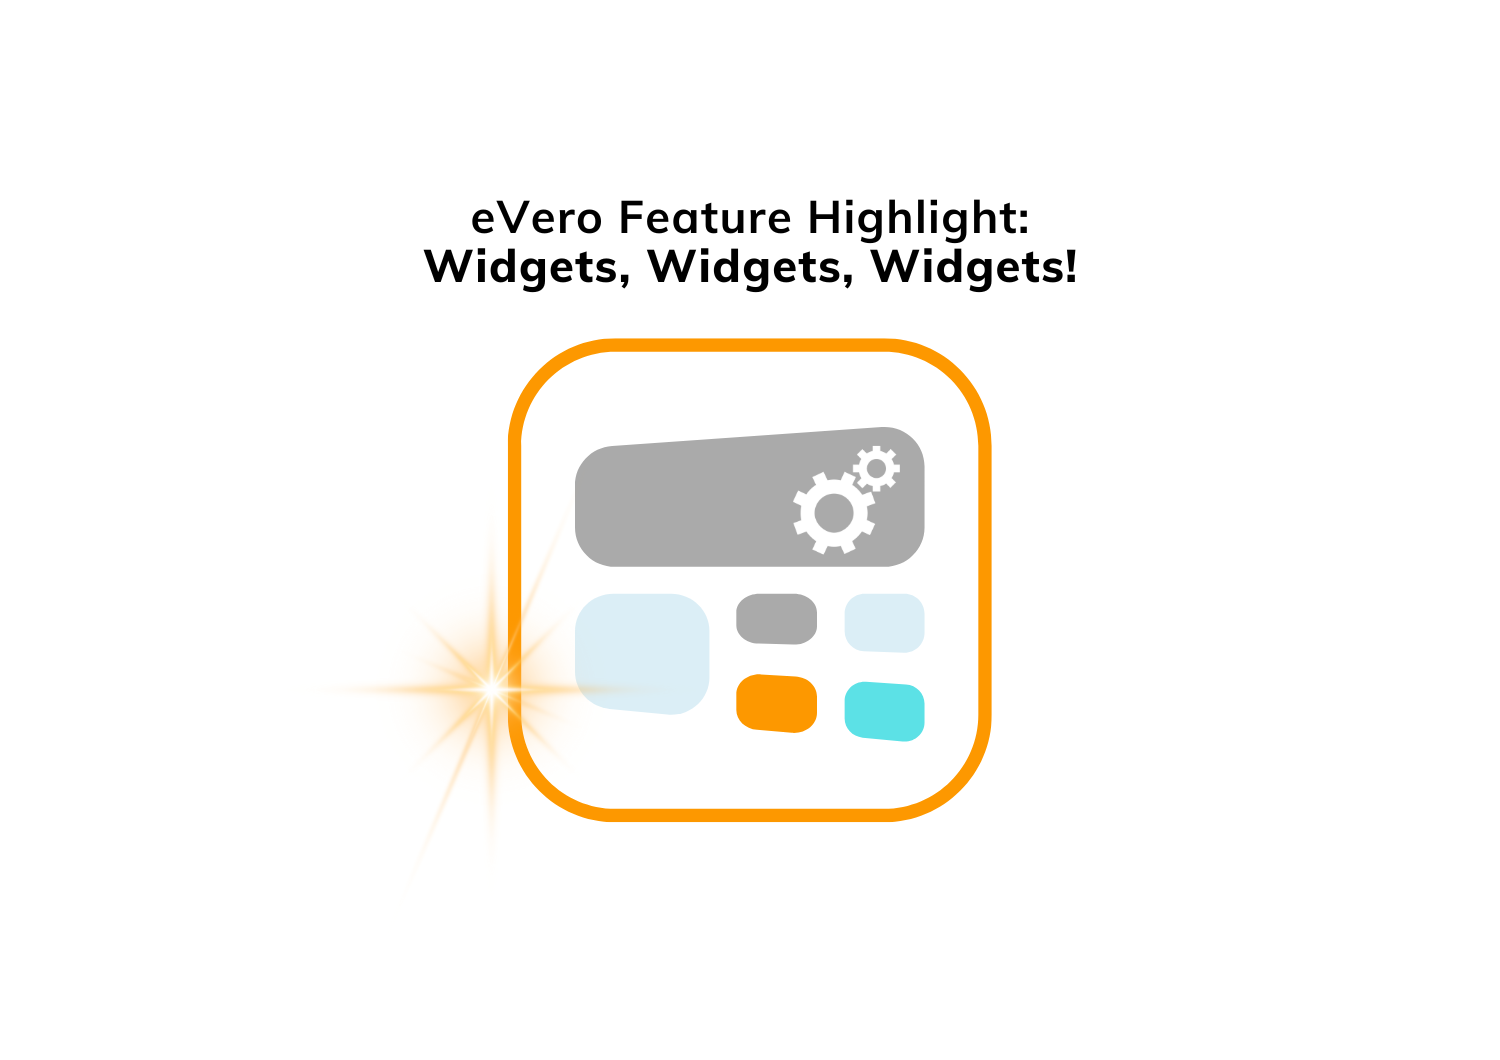 Widgets, widgets, widgets! eVero feature highlight